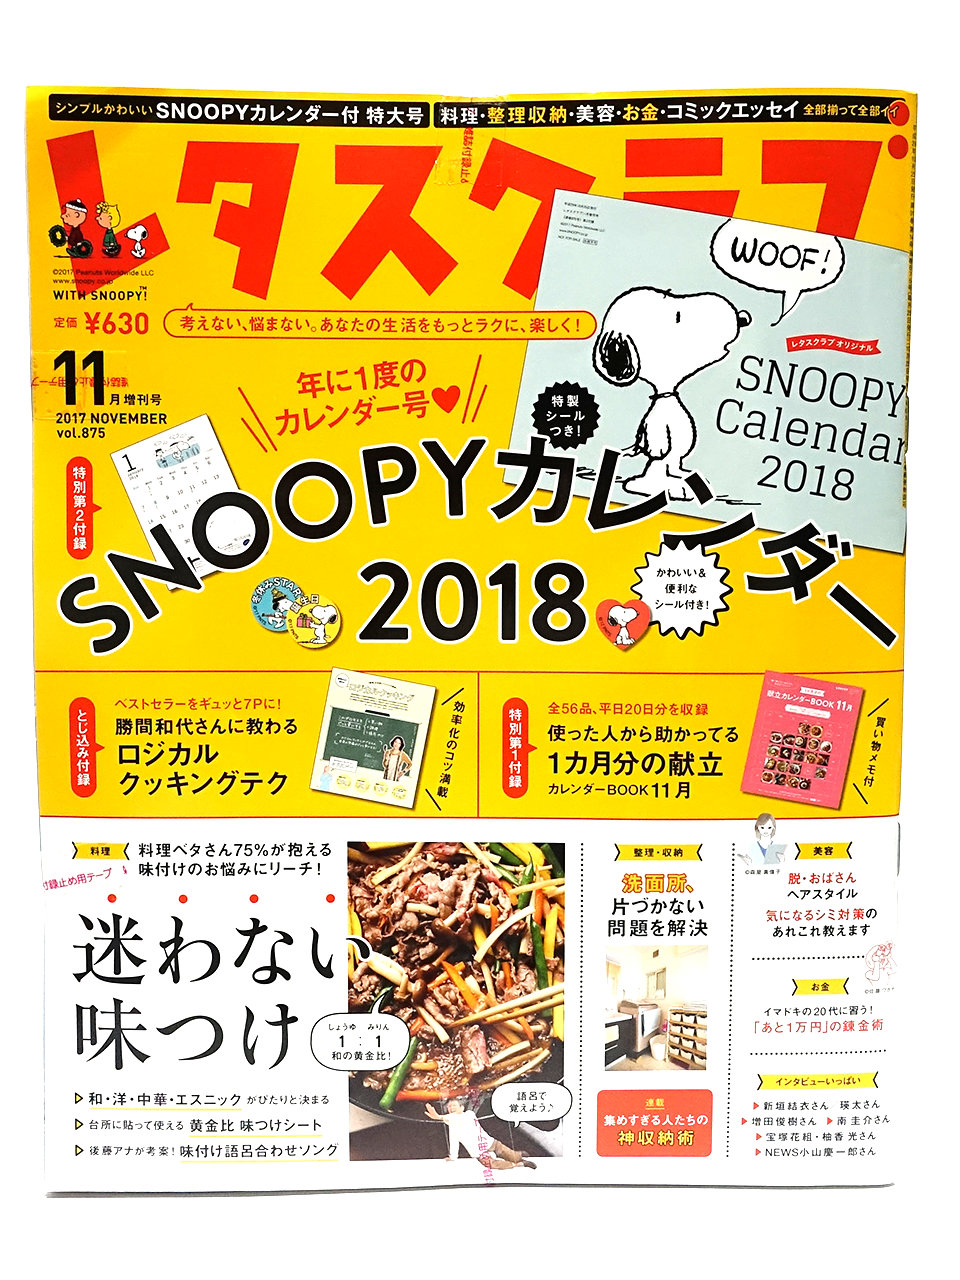 レタスクラブ 17 11月増刊号 Snoopyカレンダー18 窓辺のスヌーピー